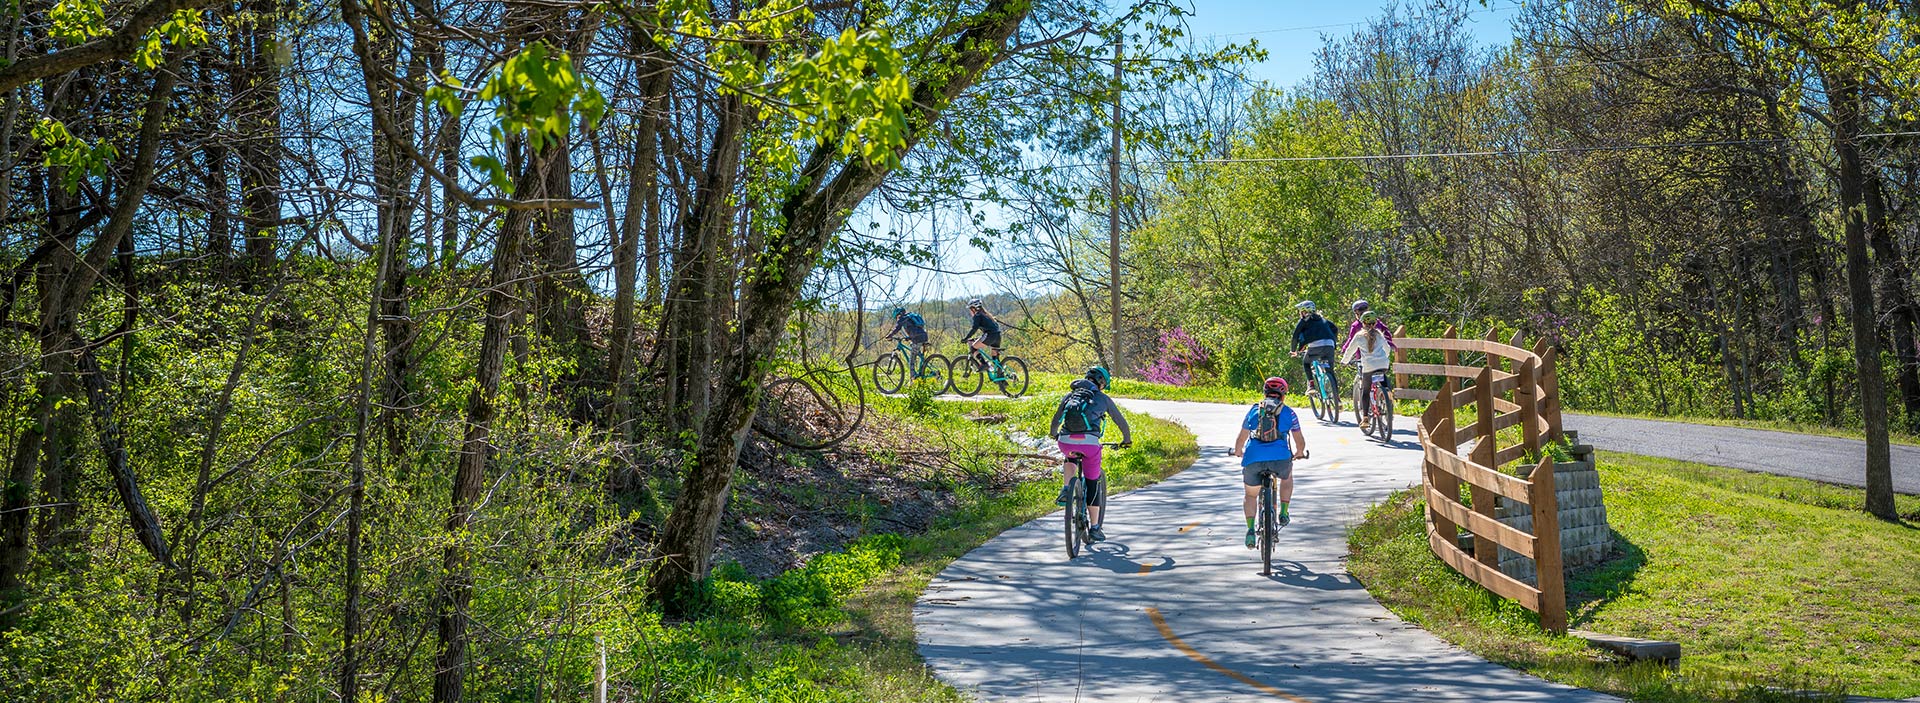 En grupp människor cyklar genom ett grönområde i solsken.